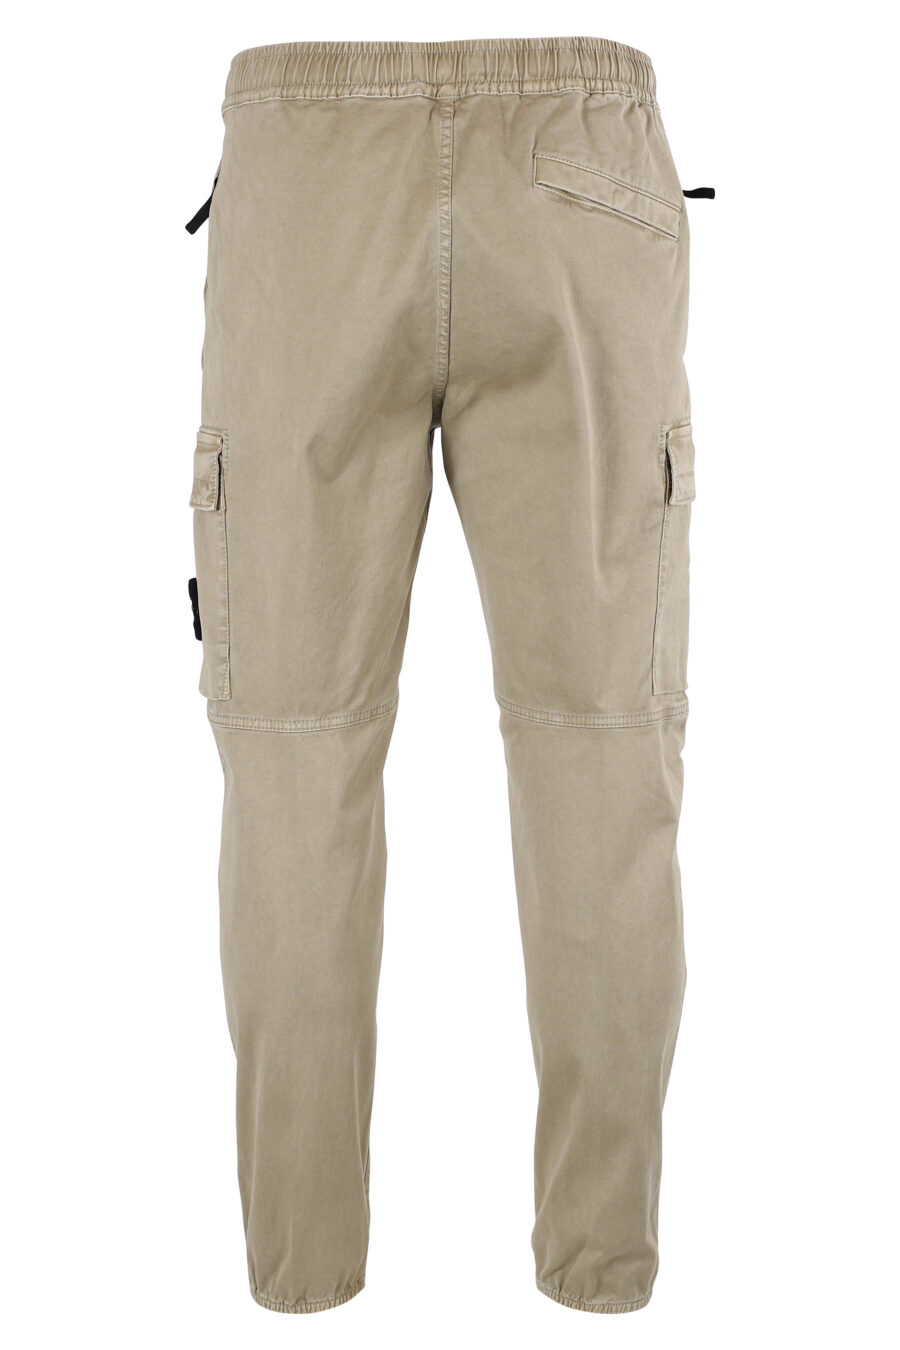 Pantalón beige estilo cargo con parche lateral - IMG 8327